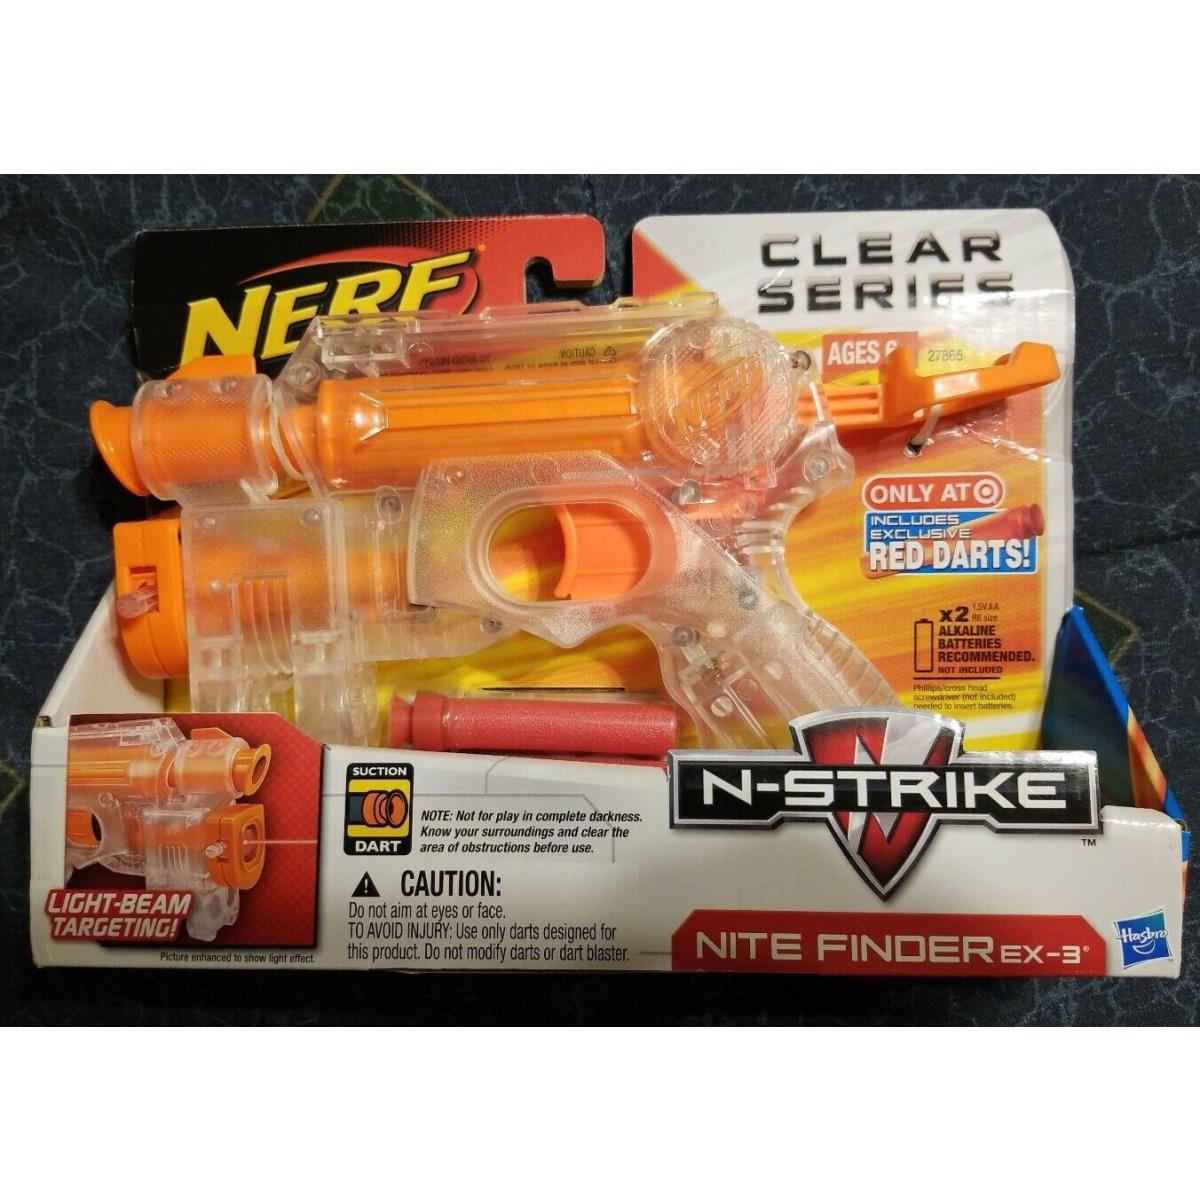 Nerf Clear Series N-strike Nite Finder EX-3 Hasbro